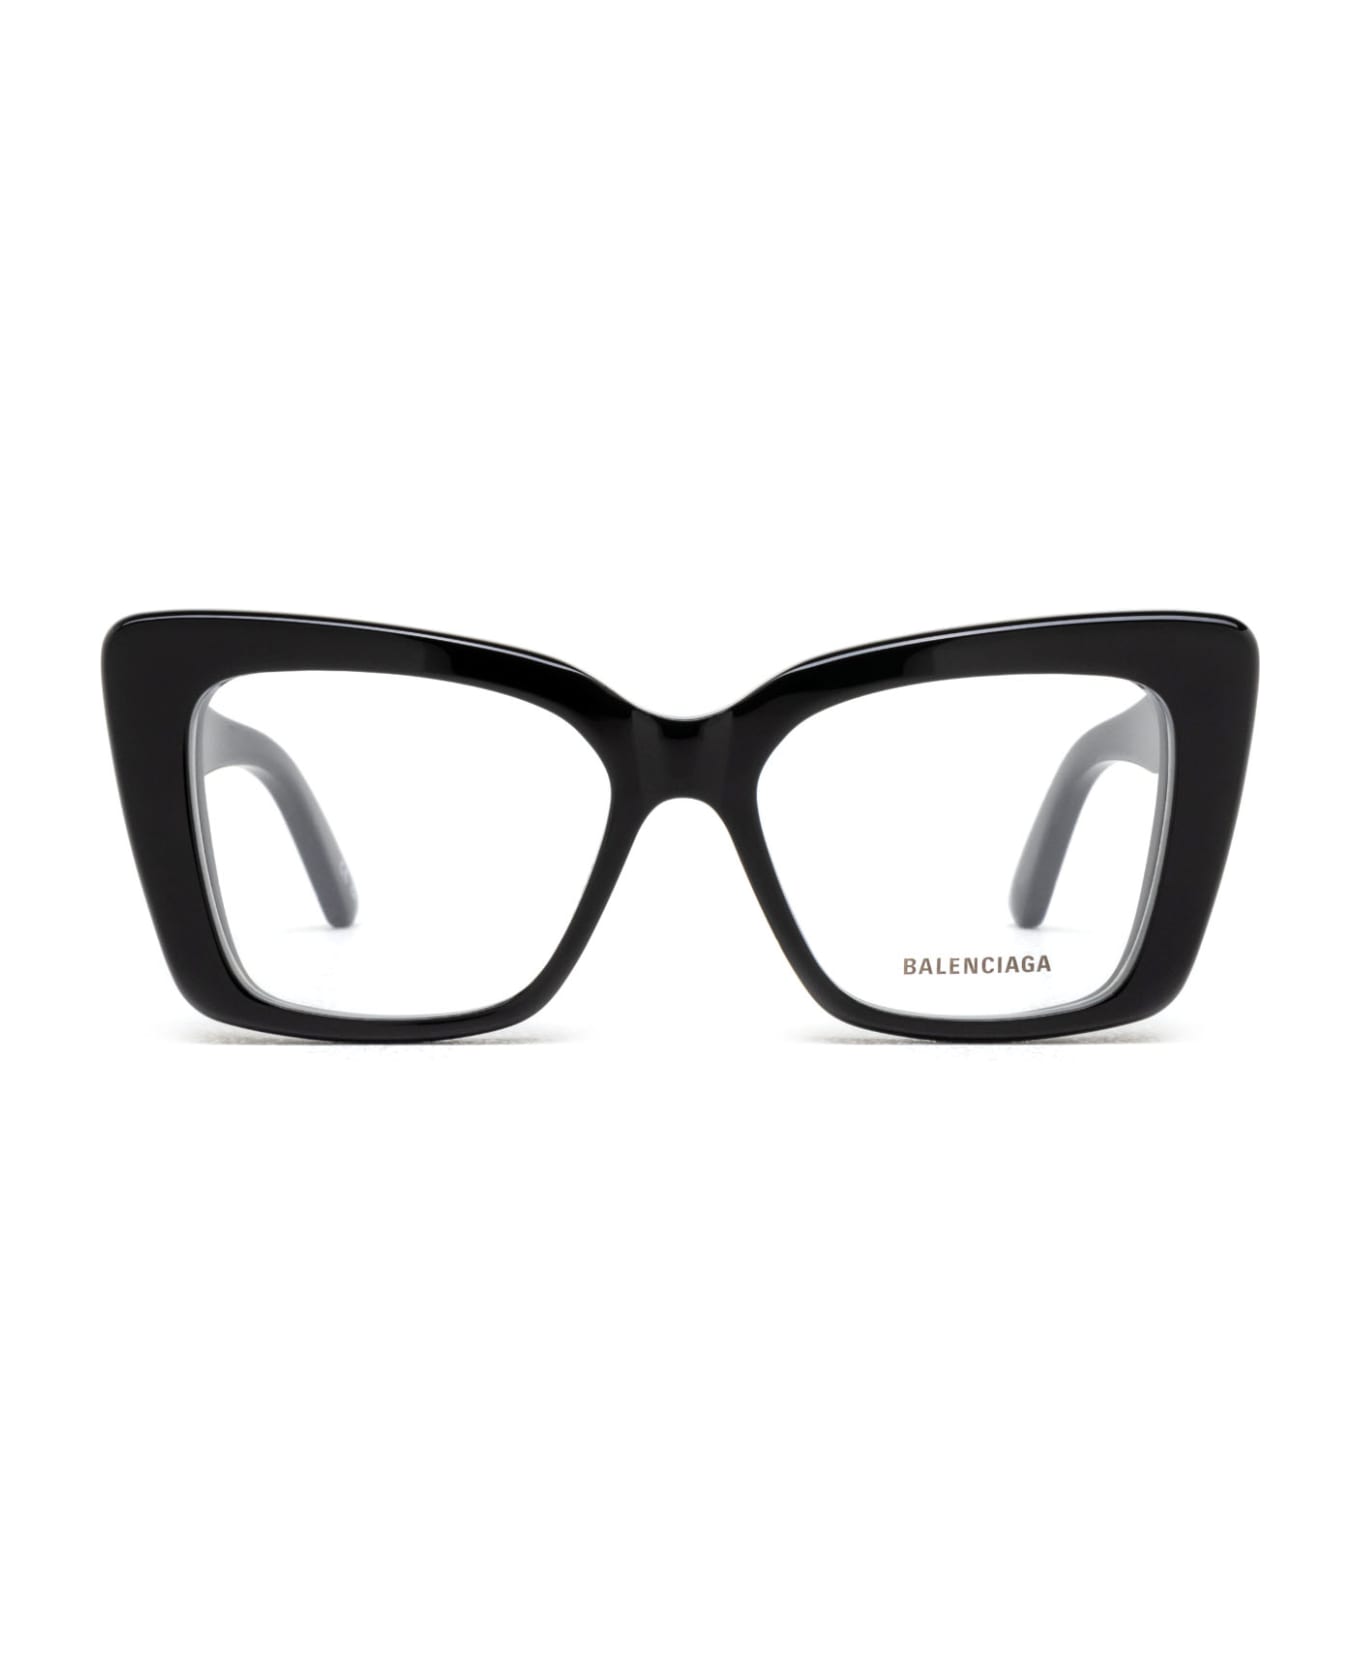 Balenciaga Eyewear Bb0297o Glasses - Black